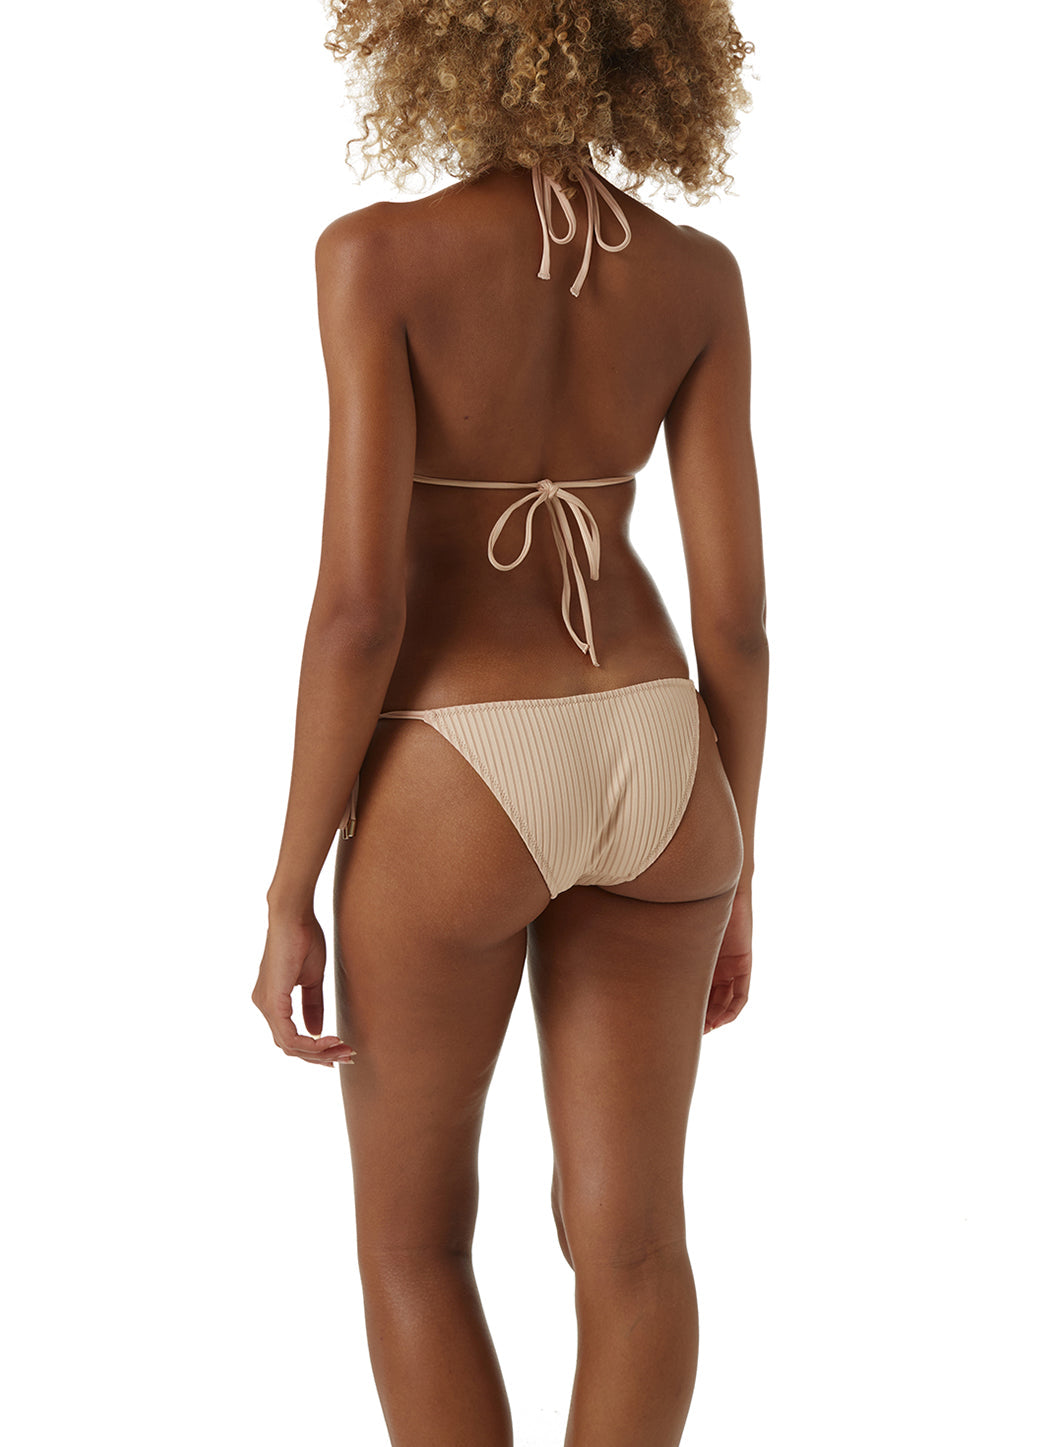 Miami Tan Ribbed Bikini Model B